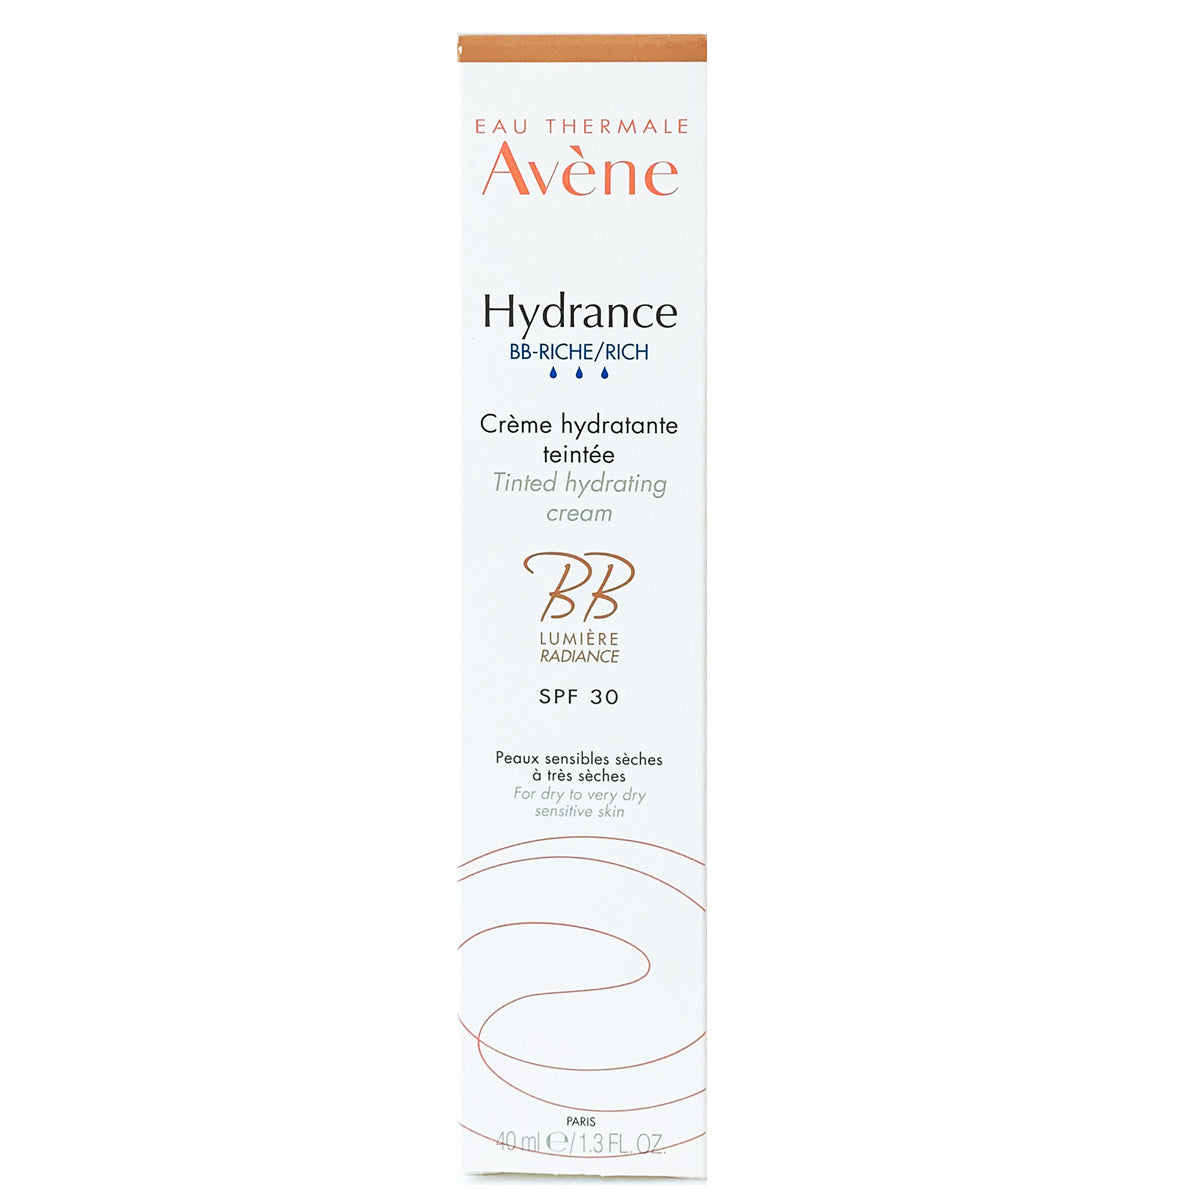 Avene Hydrance BB cream 4 en 1 enriquecida FPS 30, antiedad piel seca.